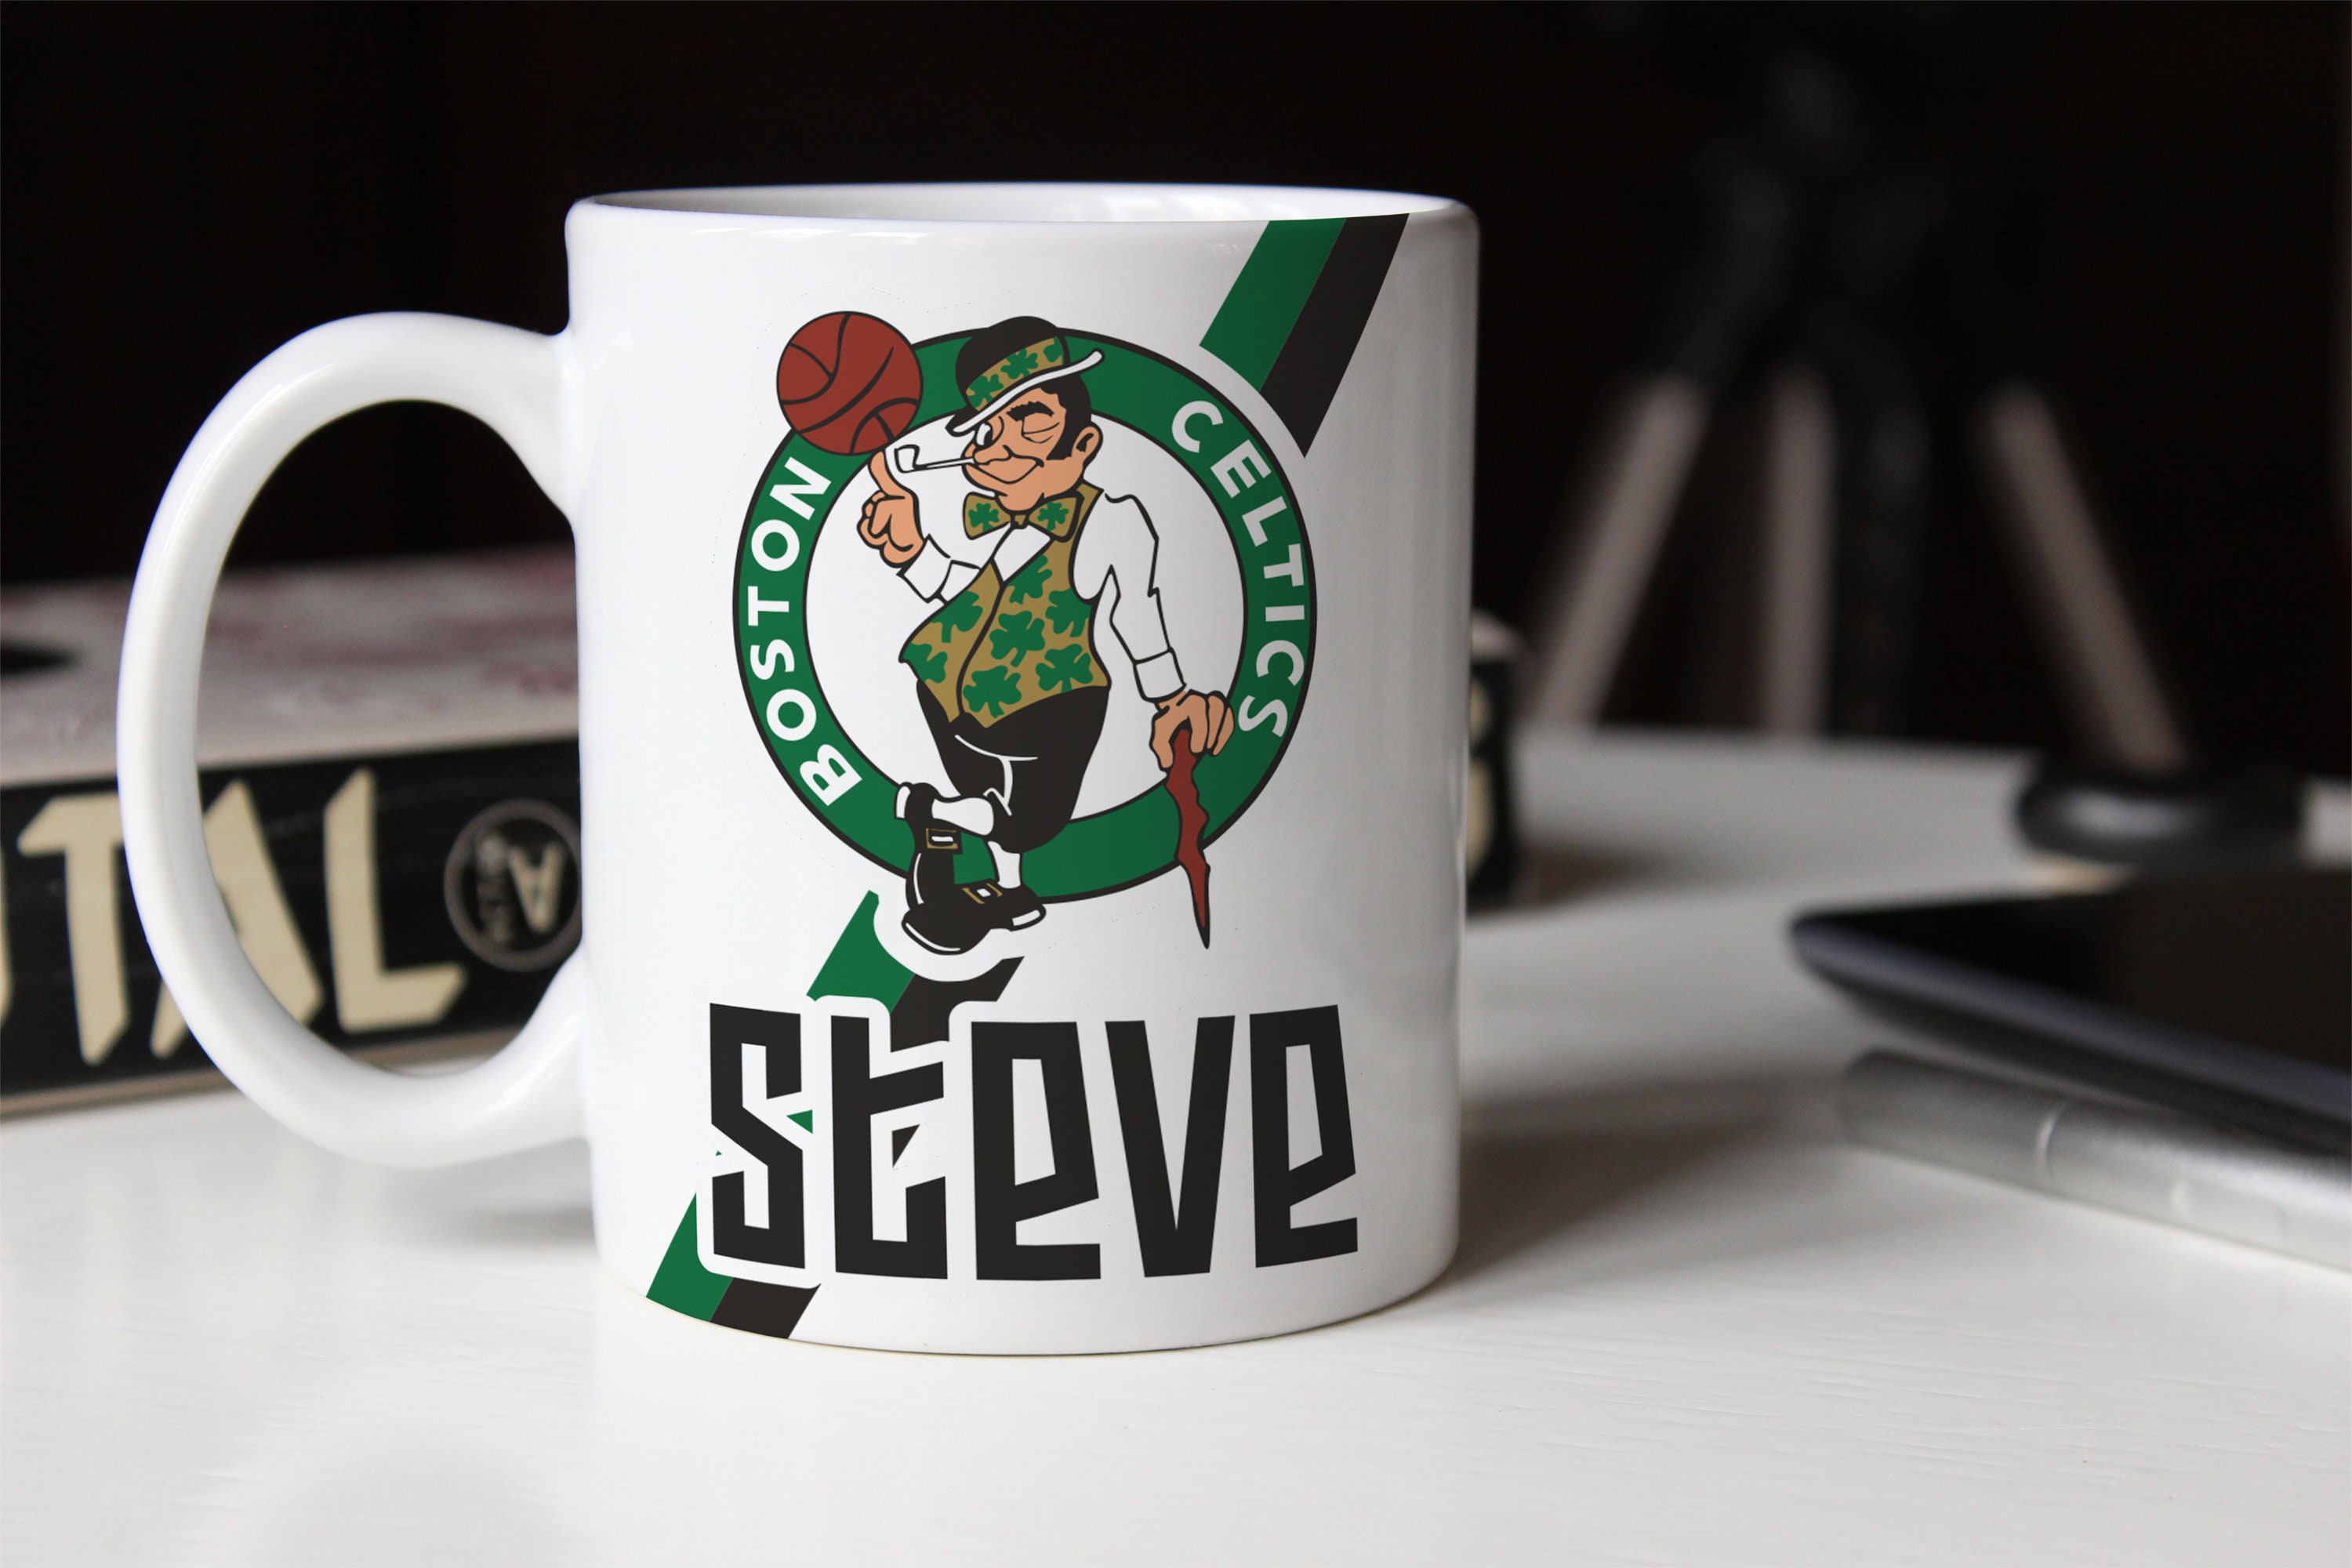 Celtics Mug Warmer Set